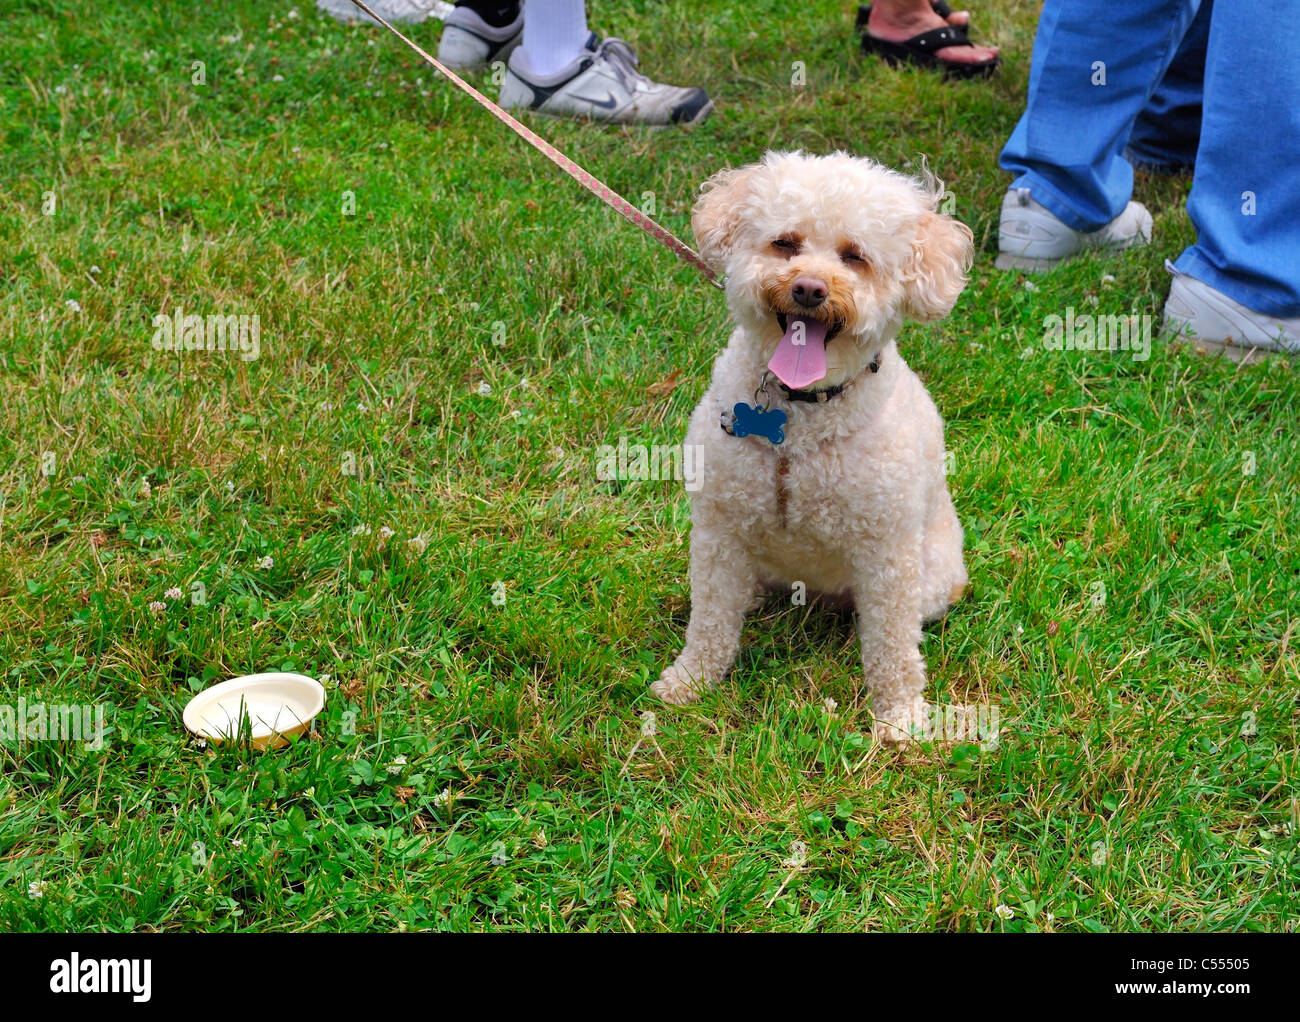 Hund an der mit kleinen Wasserschale auf Rasen, so gesund glücklich draußen im heißen Sommer, ein Yorkie-Poo (Yorkiepoo, Yorkiedoodle) NY Stockfotografie - Alamy